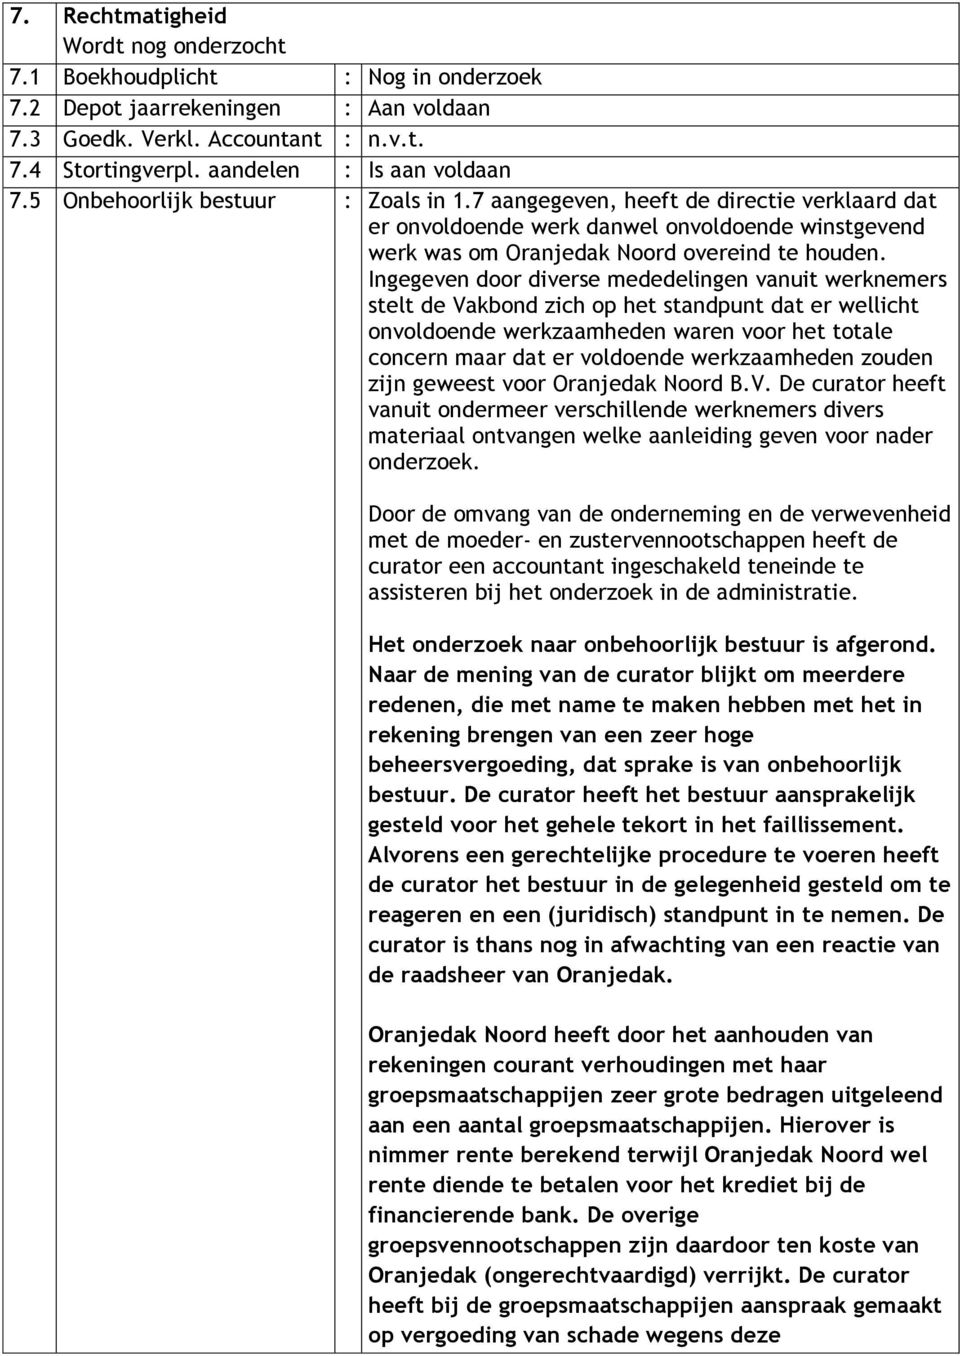 7 aangegeven, heeft de directie verklaard dat er onvoldoende werk danwel onvoldoende winstgevend werk was om Oranjedak Noord overeind te houden.